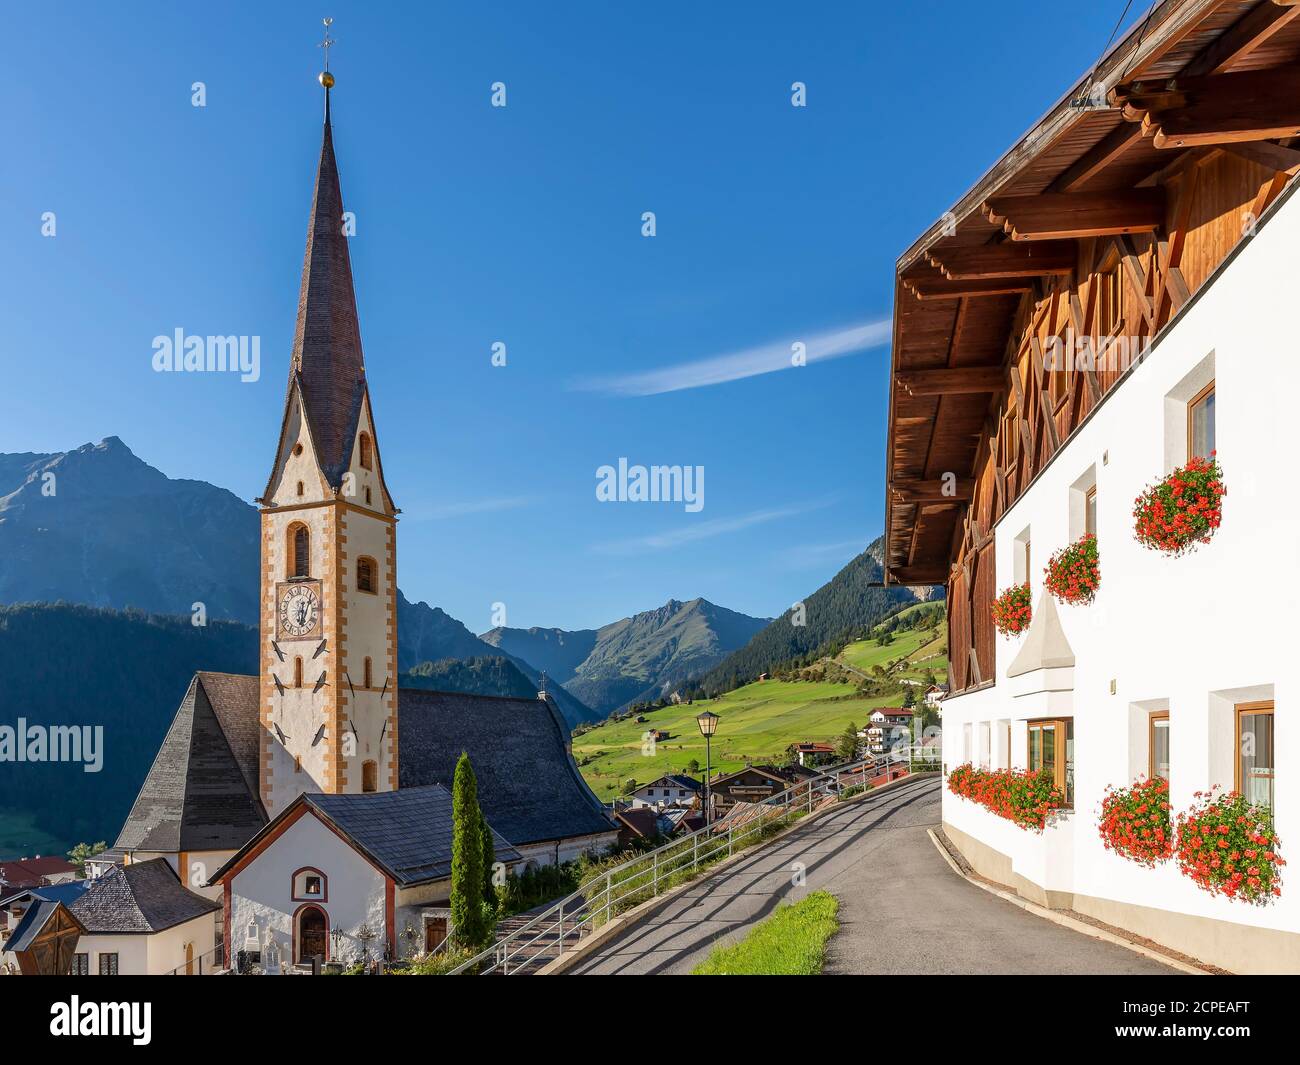 Le centre historique et l'église paroissiale de Nauders dans le Tyrol autrichien, près de la frontière avec l'Italie Banque D'Images